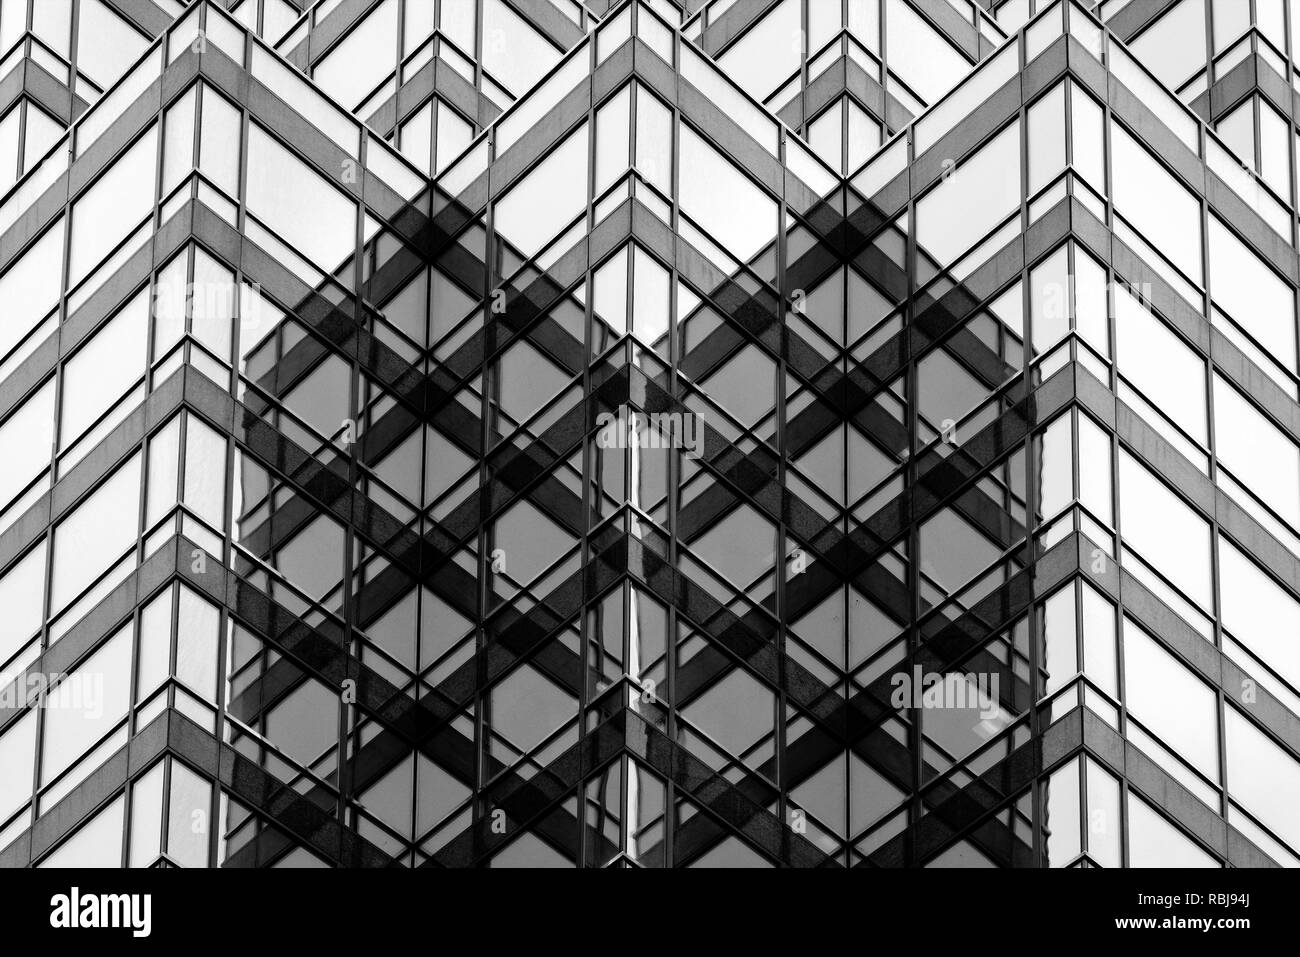 Architektonische Details der Queen Street East Tower in der Innenstadt von Toronto, Kanada Stockfoto